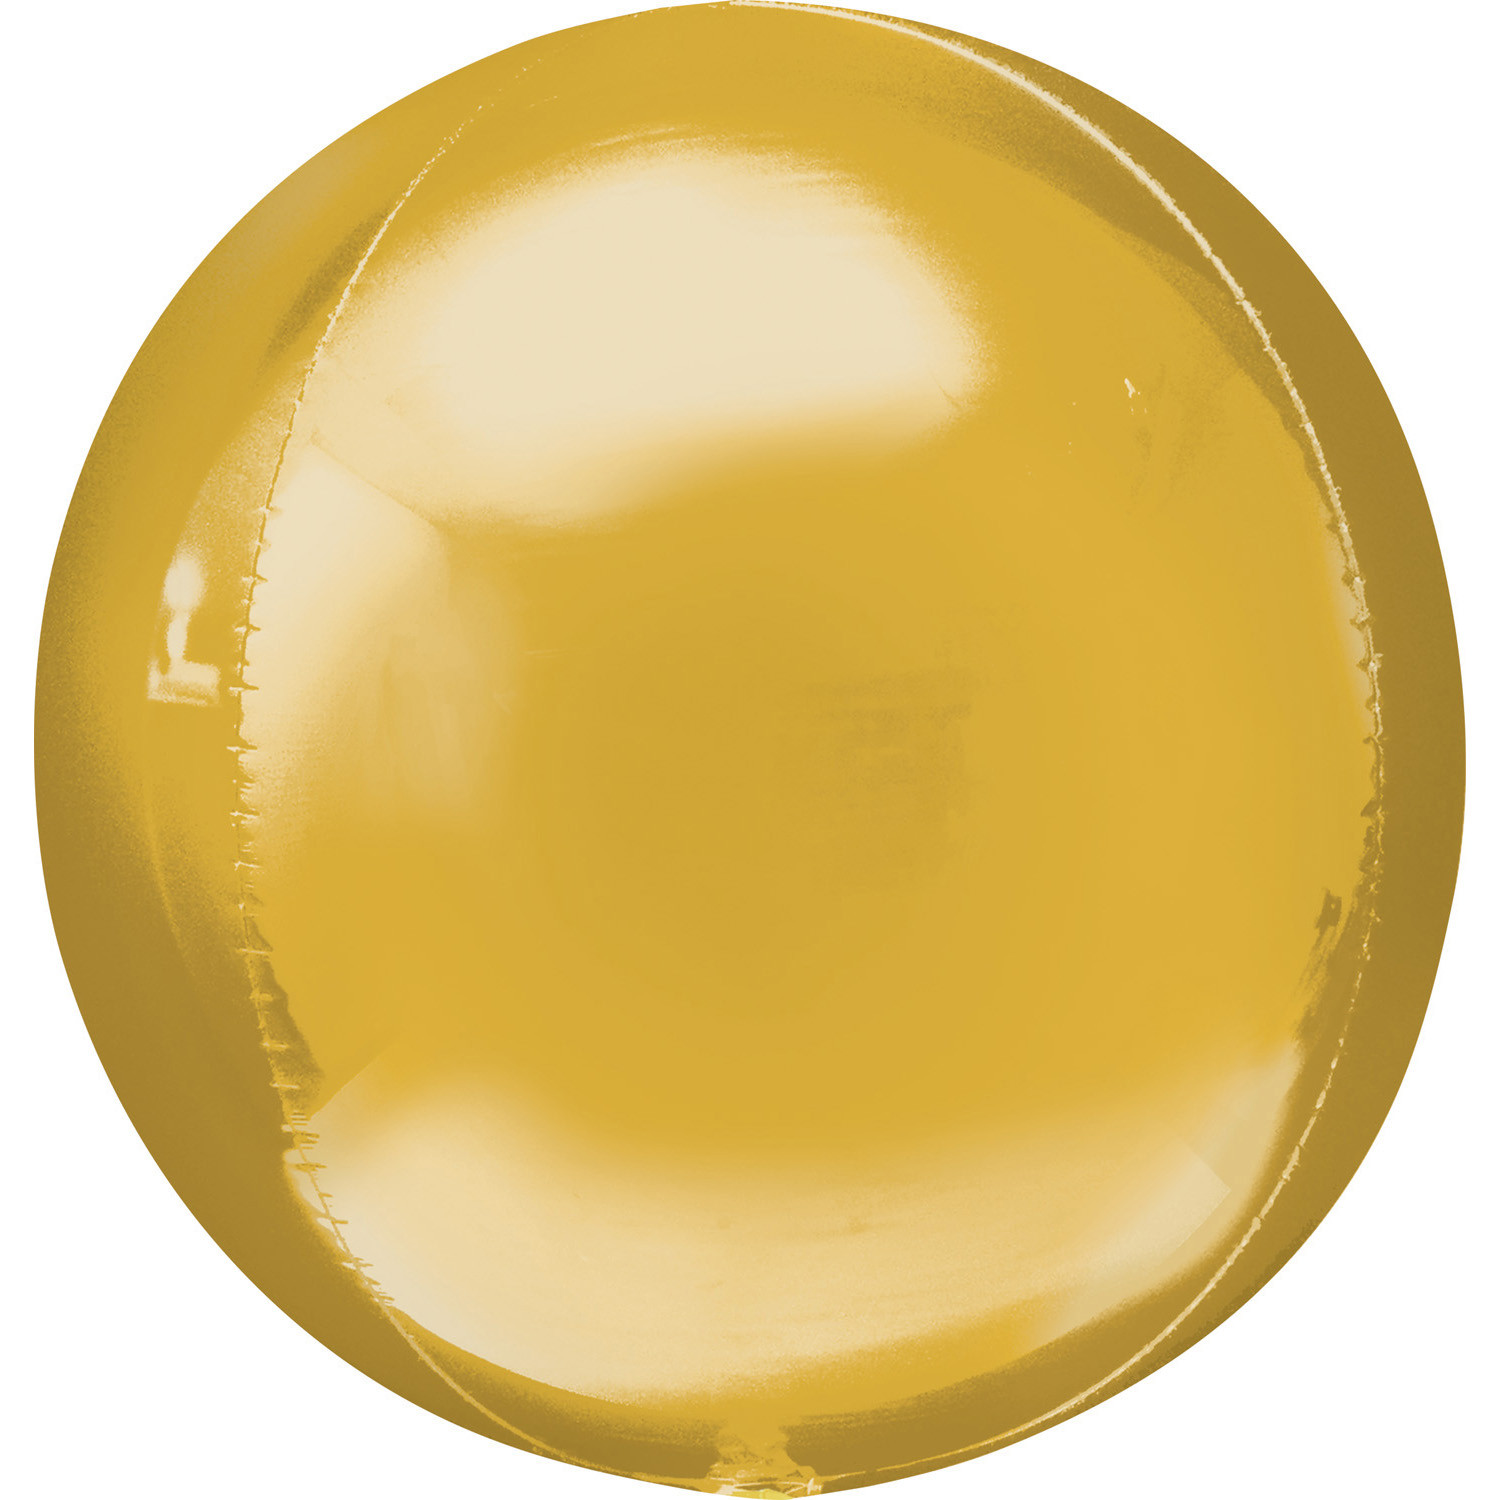 Balon foliowy Jumbo Orbz - Kula złota (niezapakowany) / 53x53 cm